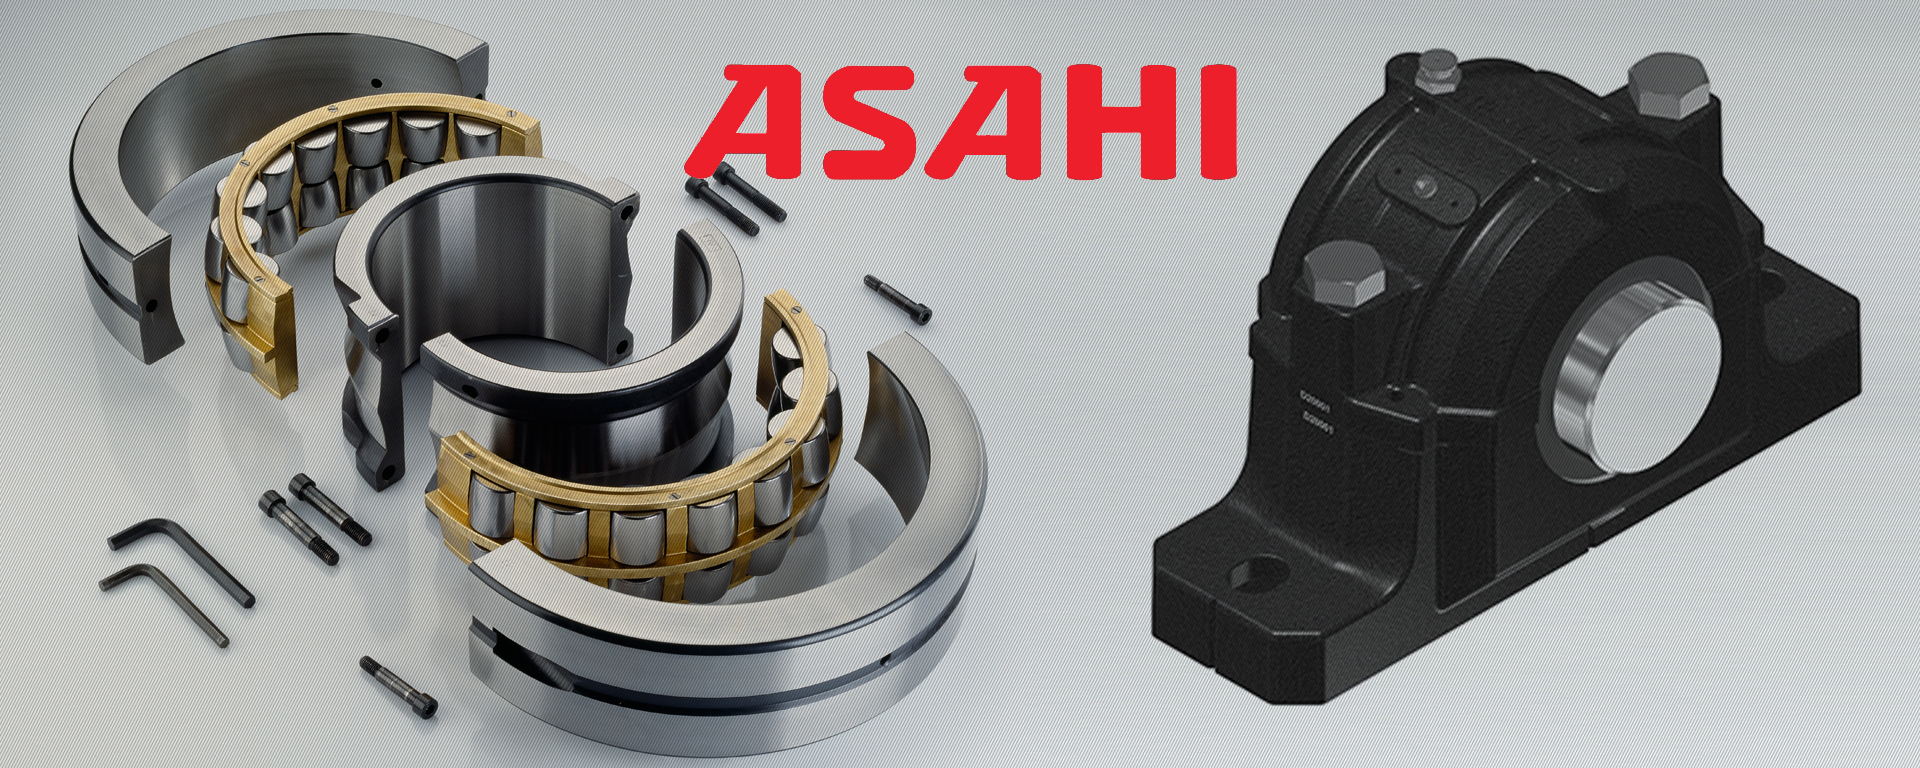 ASAHI轴承 - 上海臻游传动设备有限公司